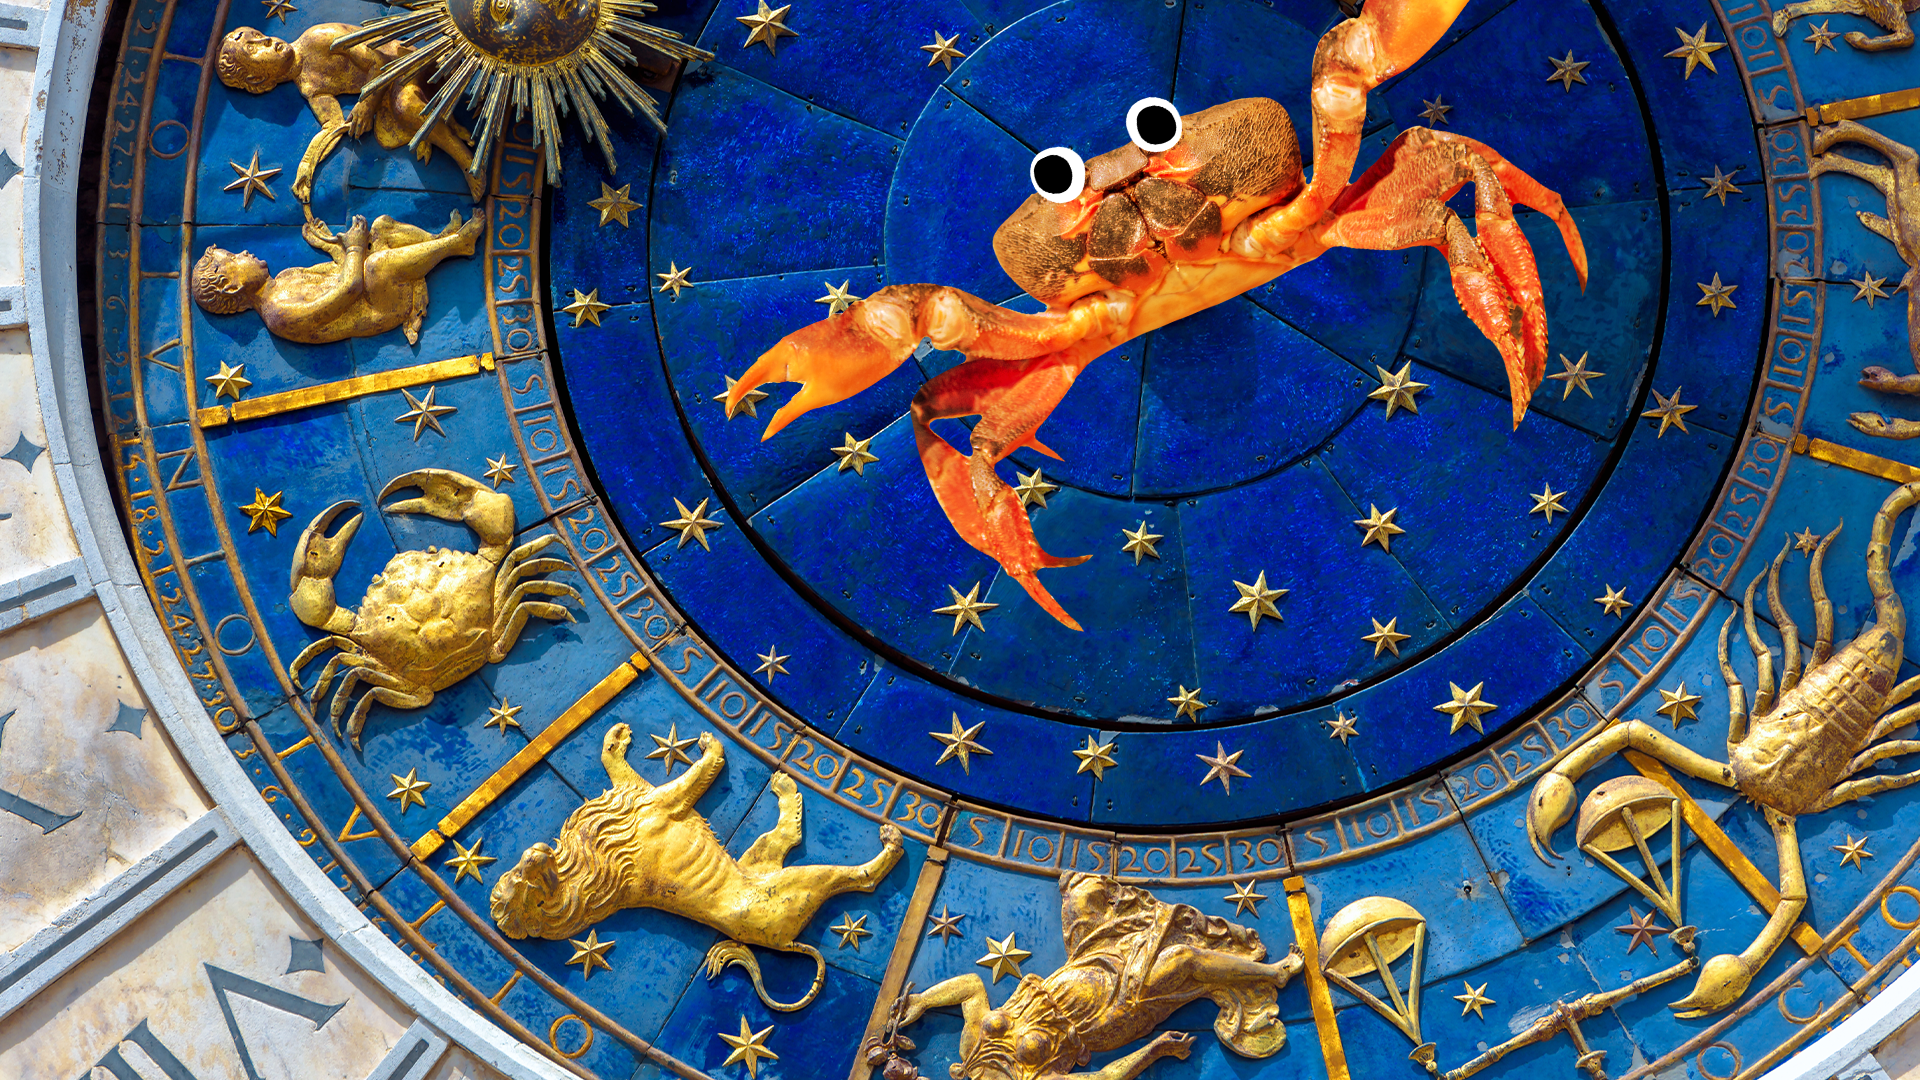 Beano crab on a zodiac wheel